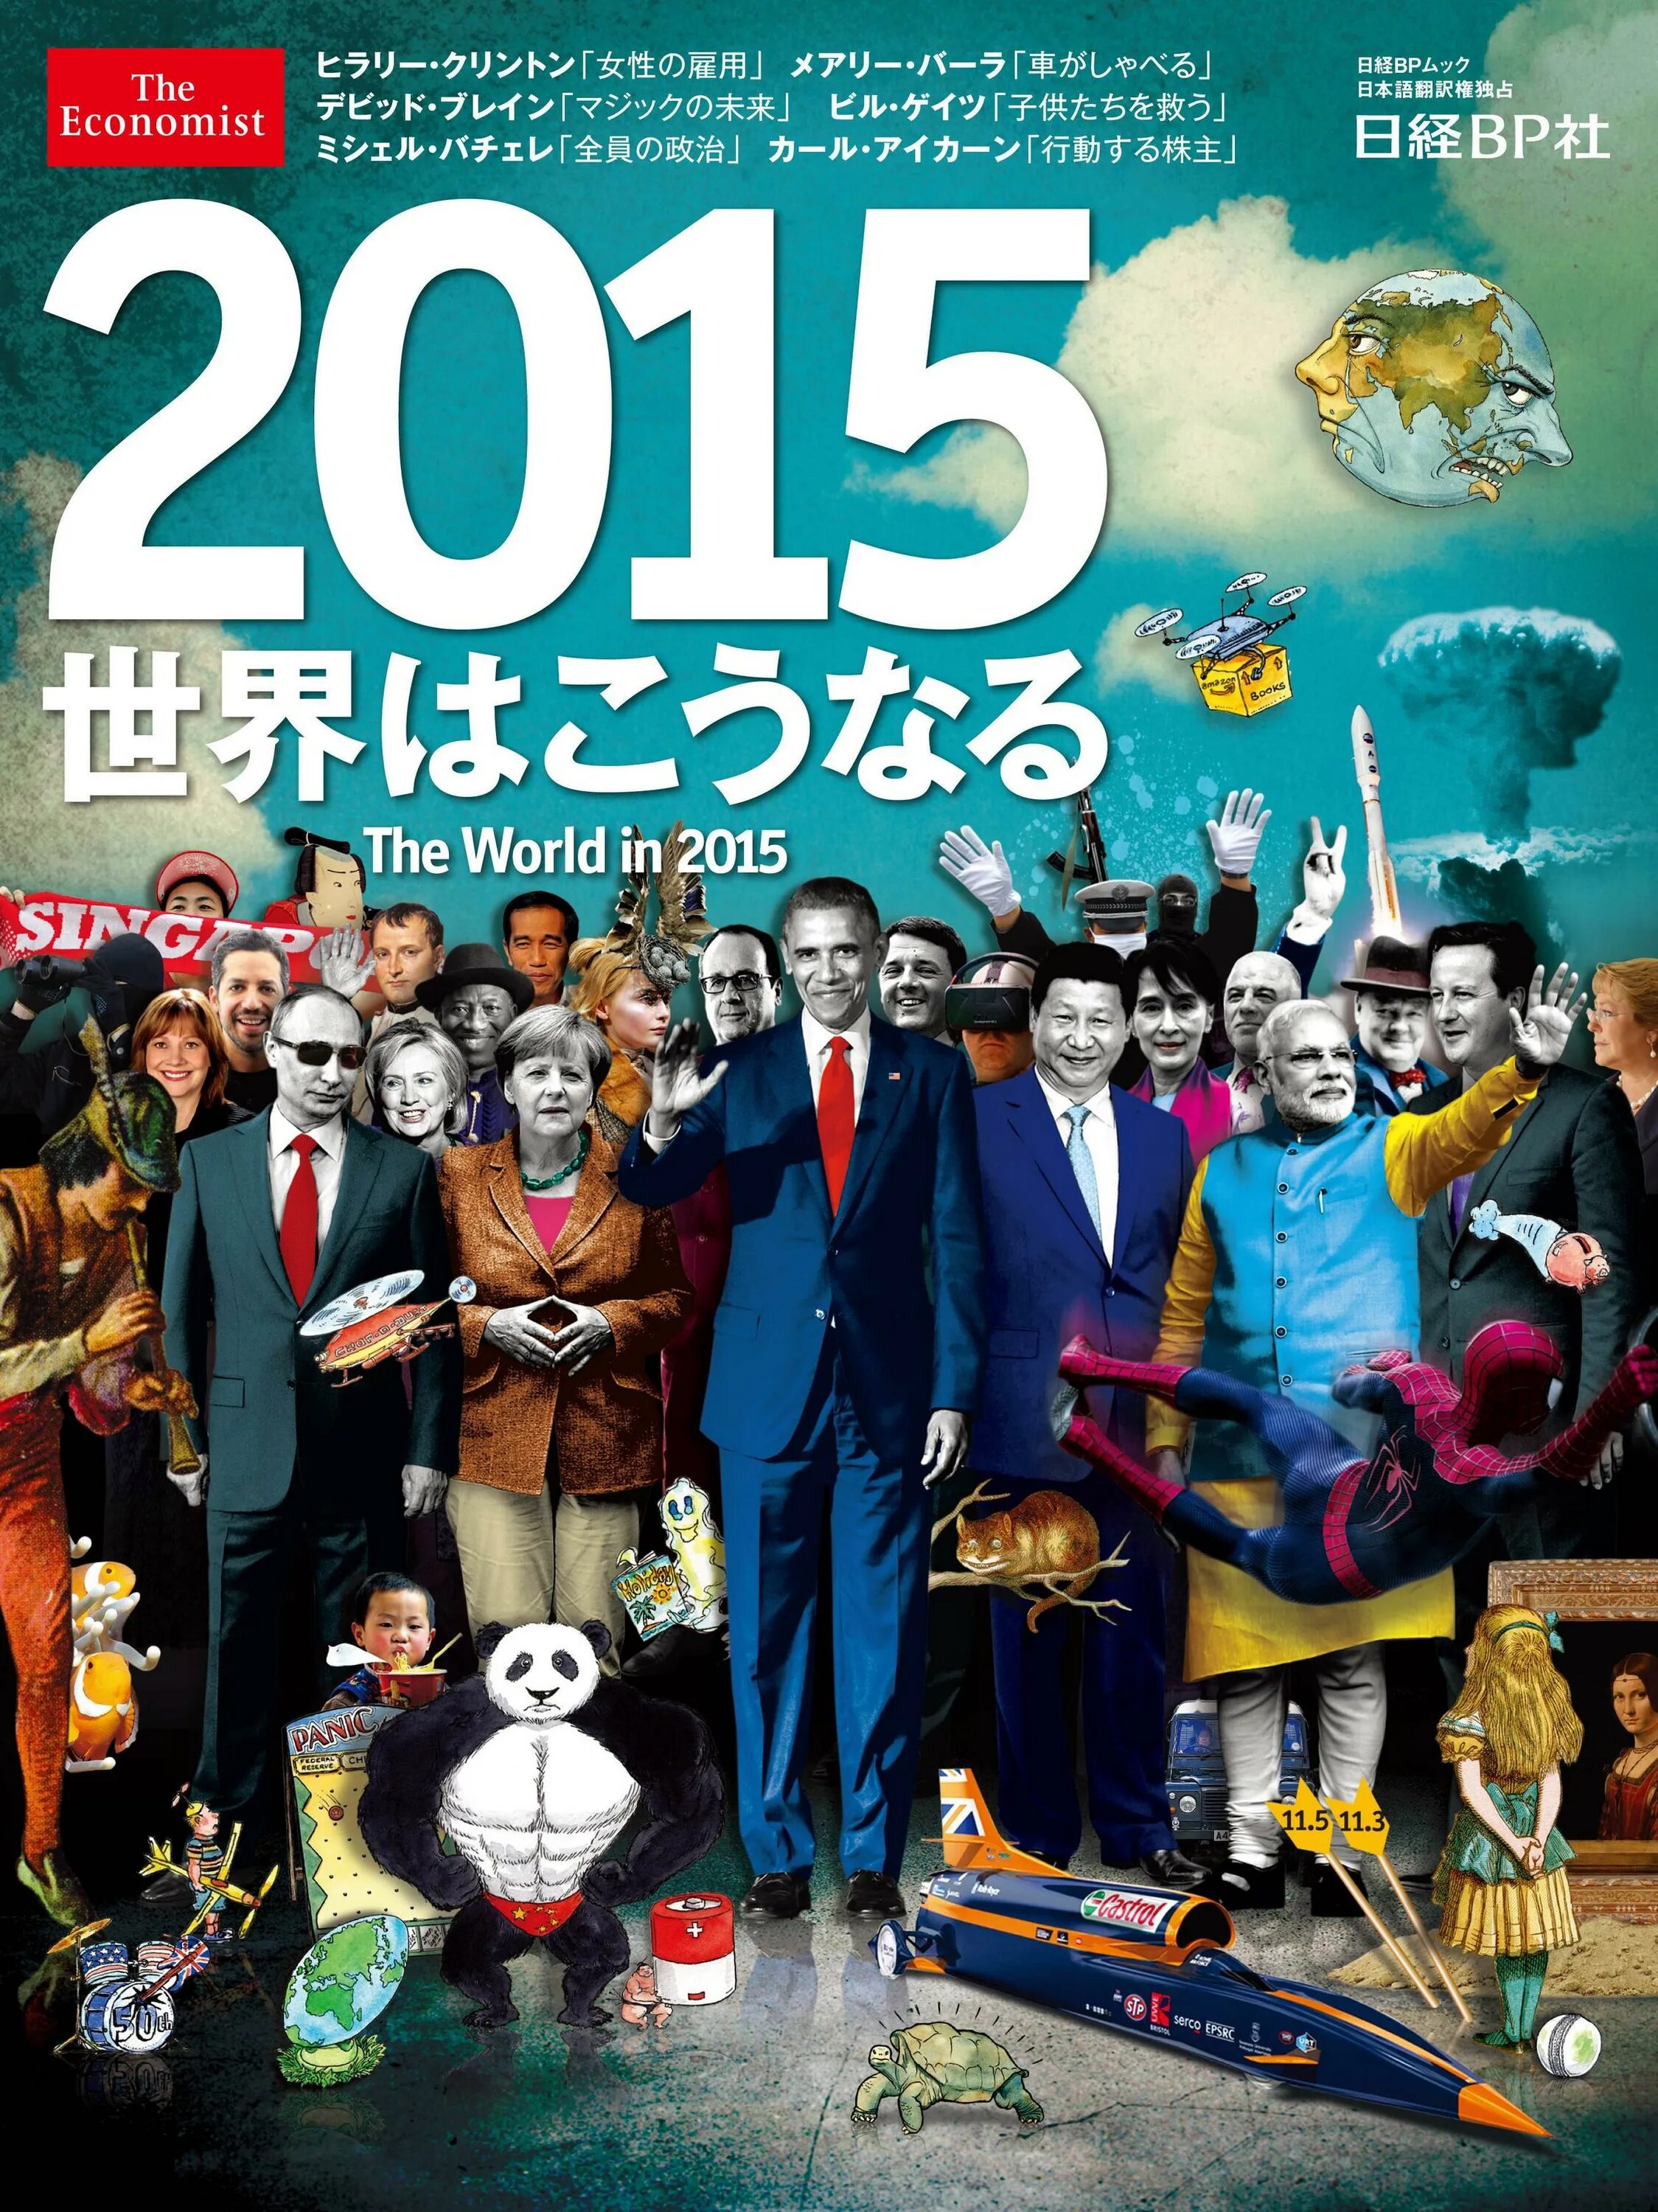 Прогнозы журнала экономист. The Economist 2015 обложка. Обложка журнала экономист Ротшильдов. Обложка журнала therconomist. The World in 2023 Economist обложка.